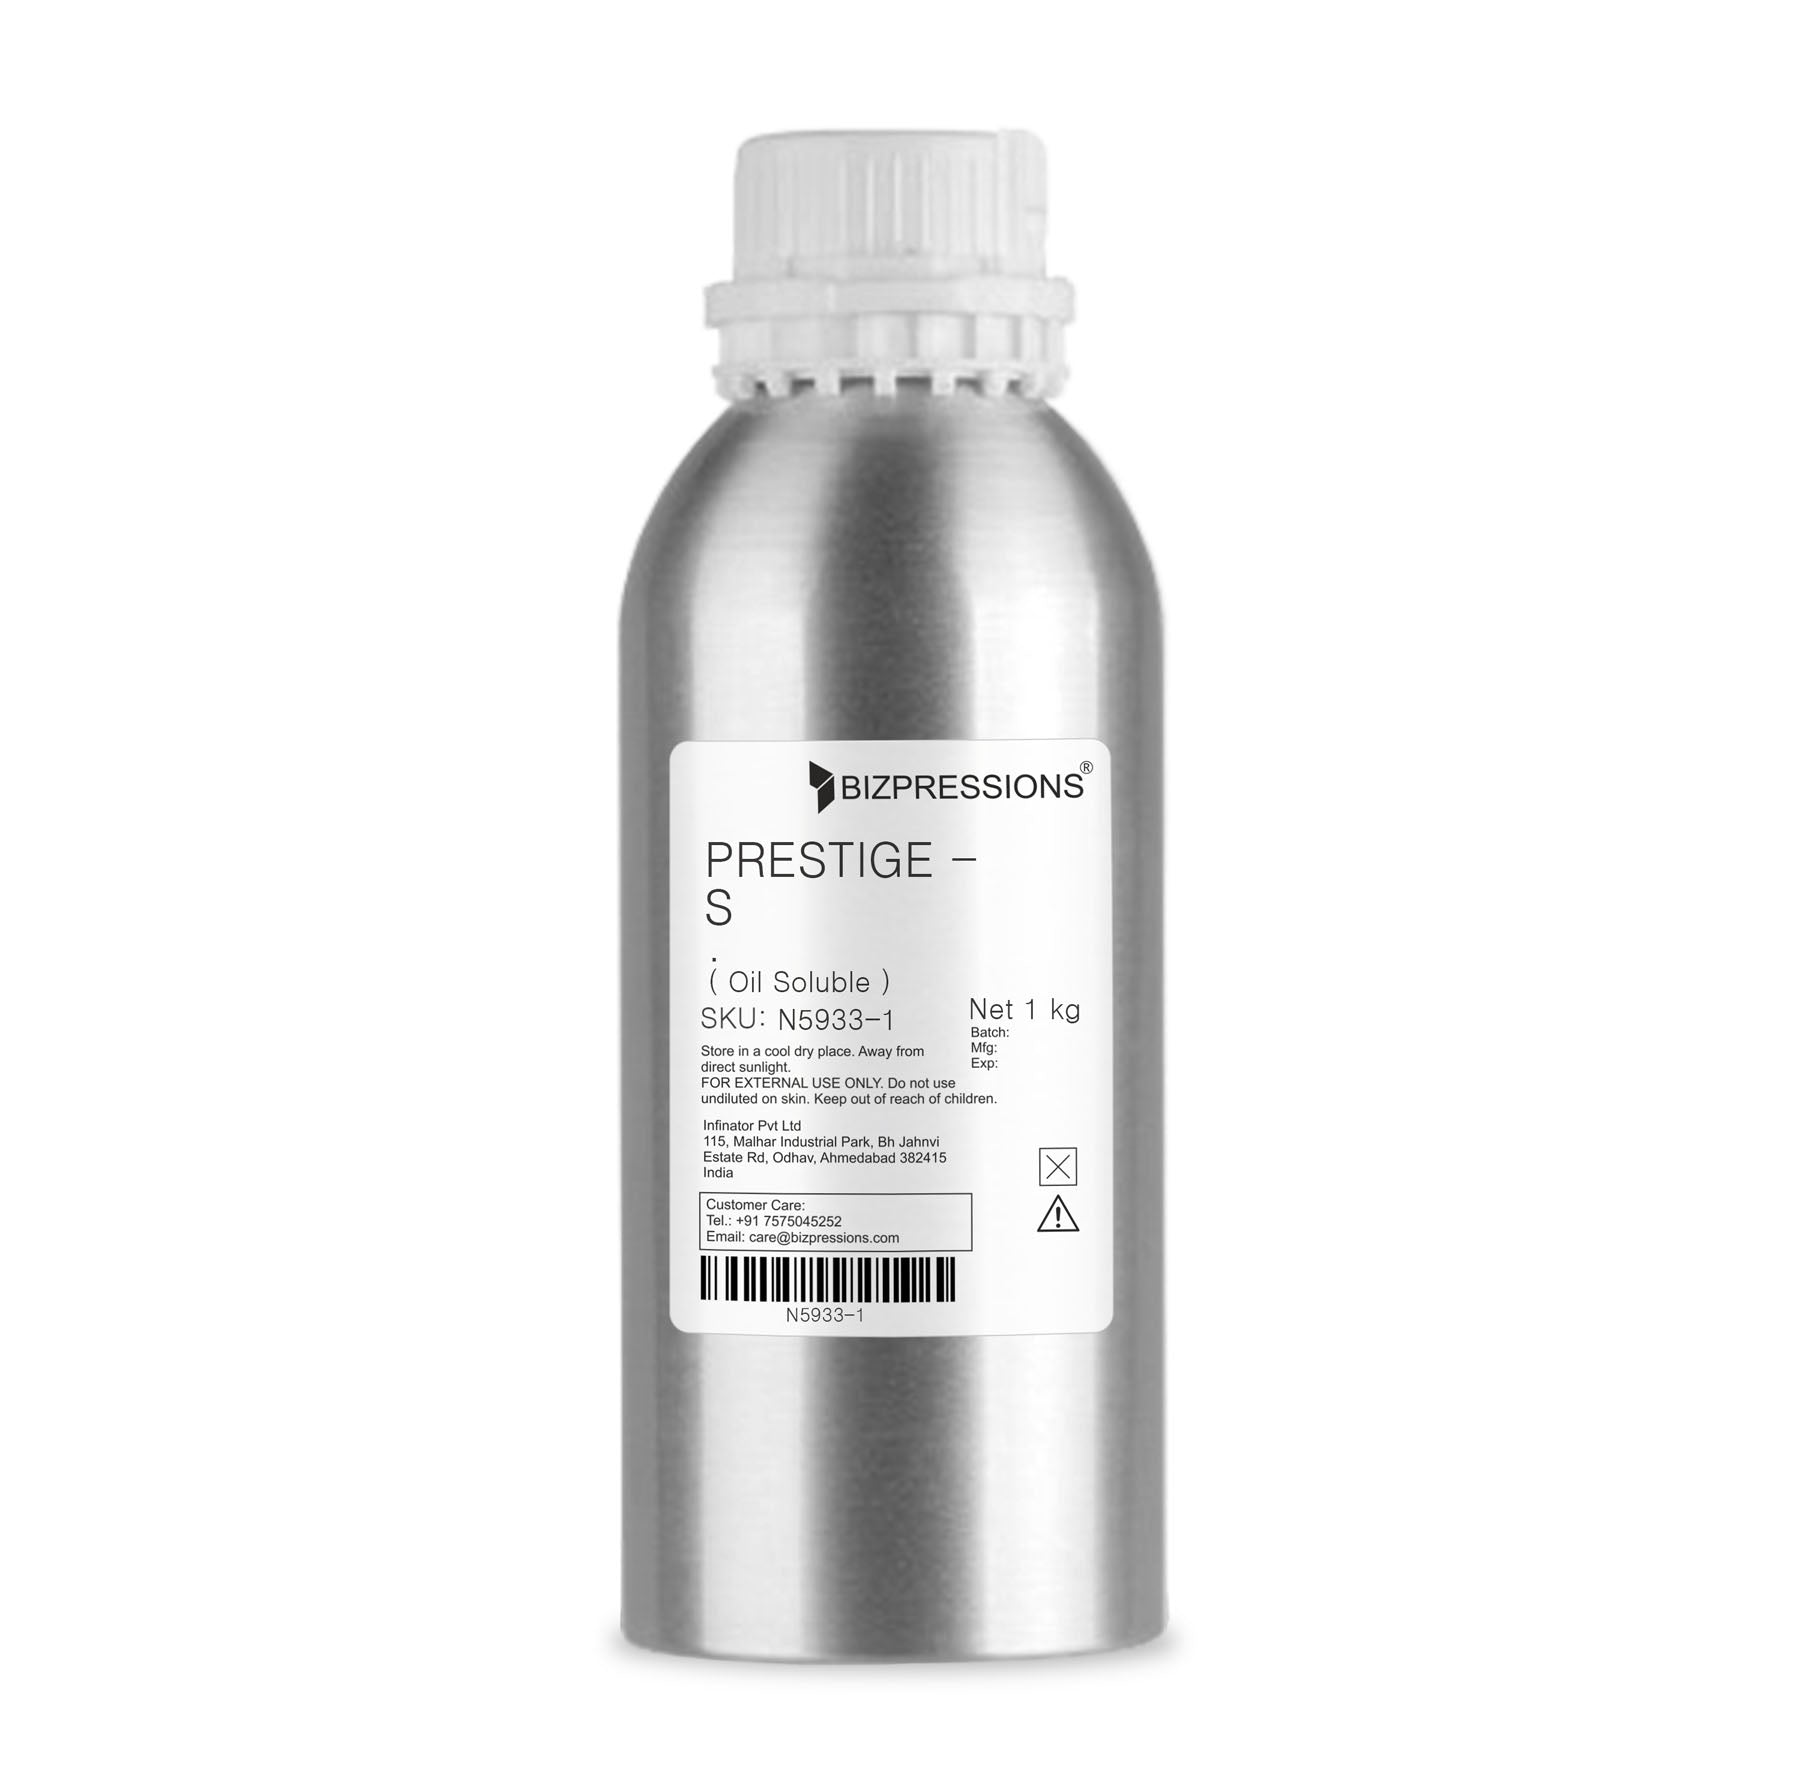 PRESTIGE - S - Fragrance ( Oil Soluble ) - 1 kg